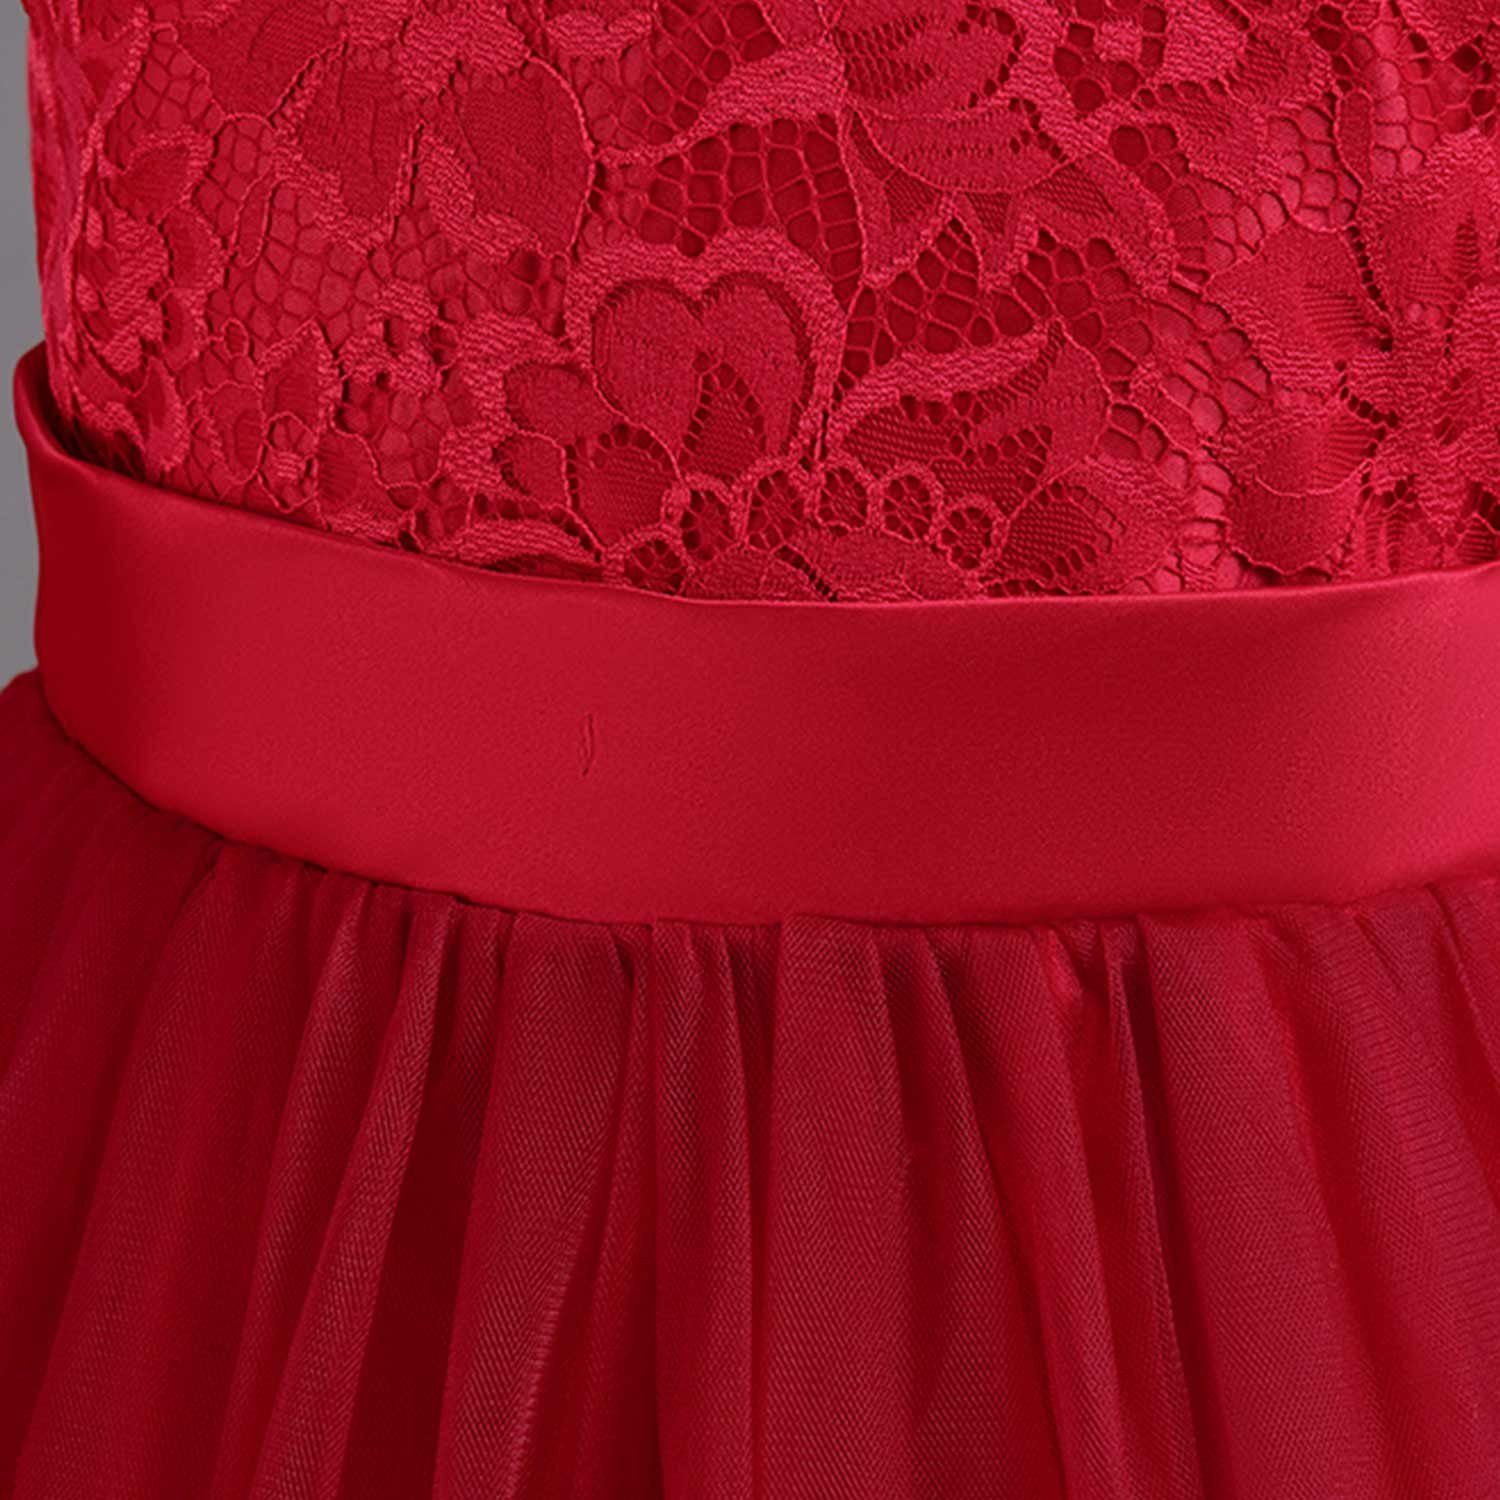 Tüllkleider Blumenmädchen Prinzessinnenkleid Rot Kinderkleider Abendkleid Daisred